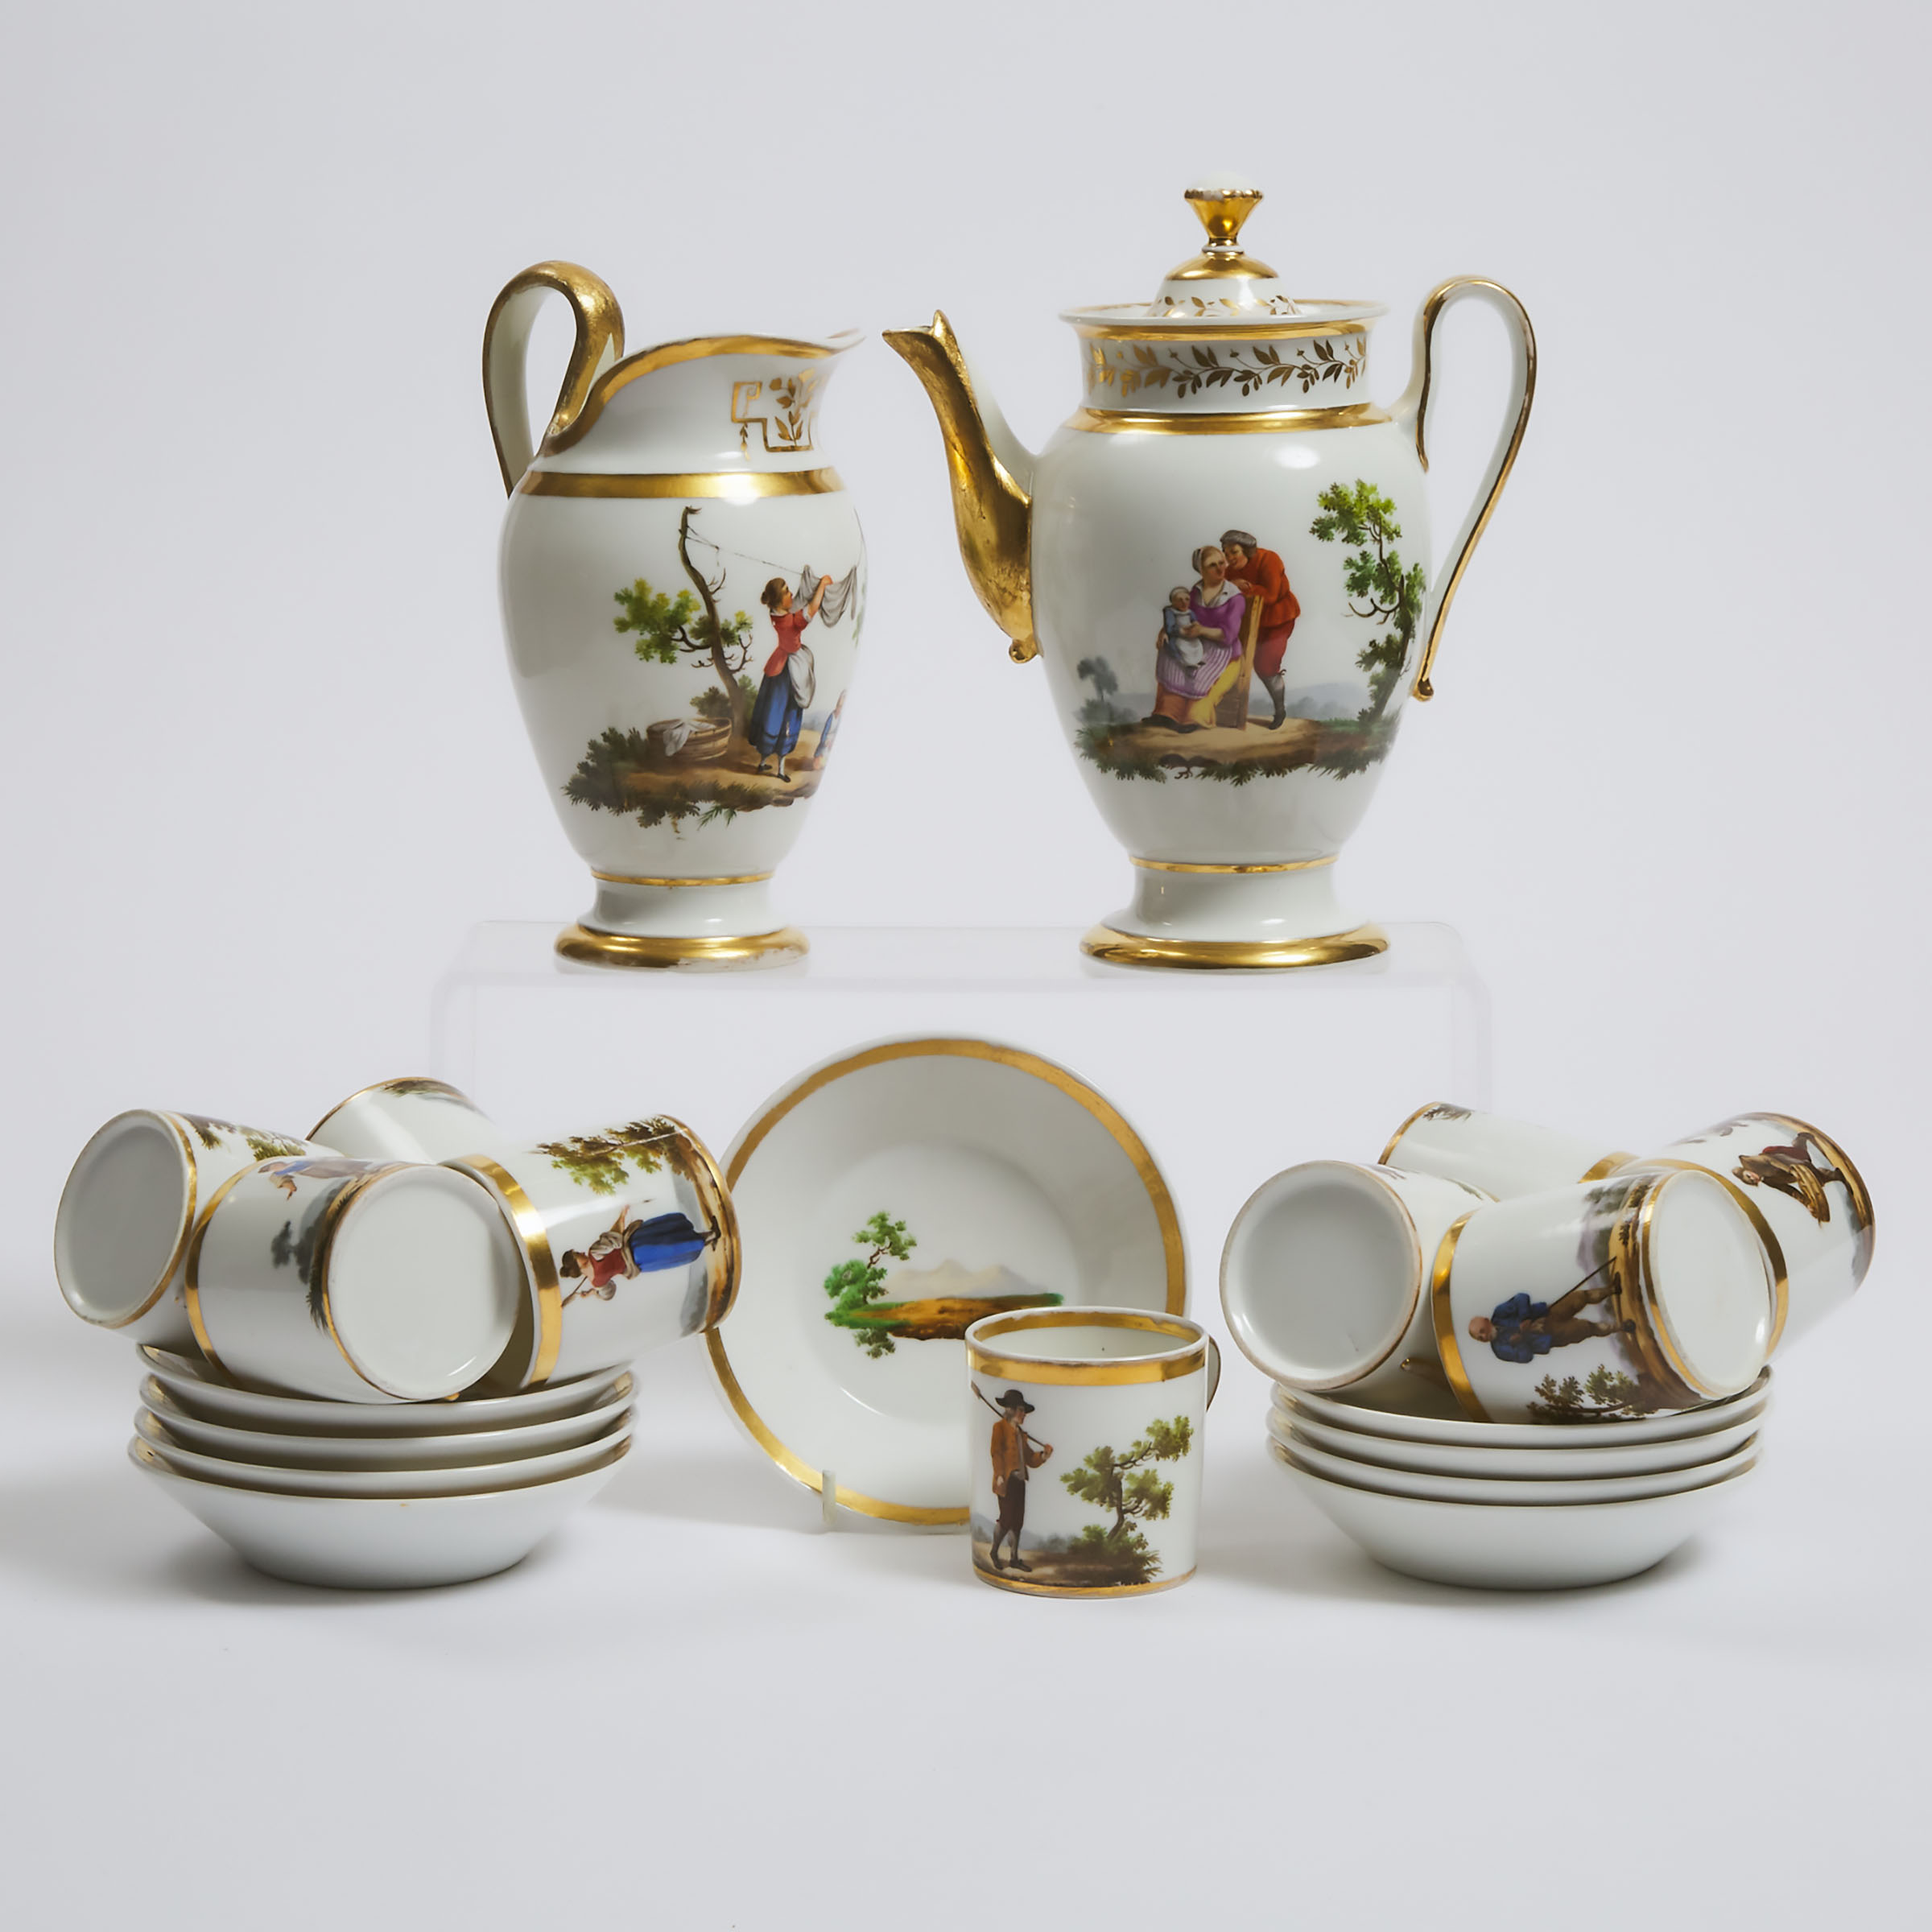 Paris Porcelain ' Peasant Costumes' Part Coffee Service, c.1830